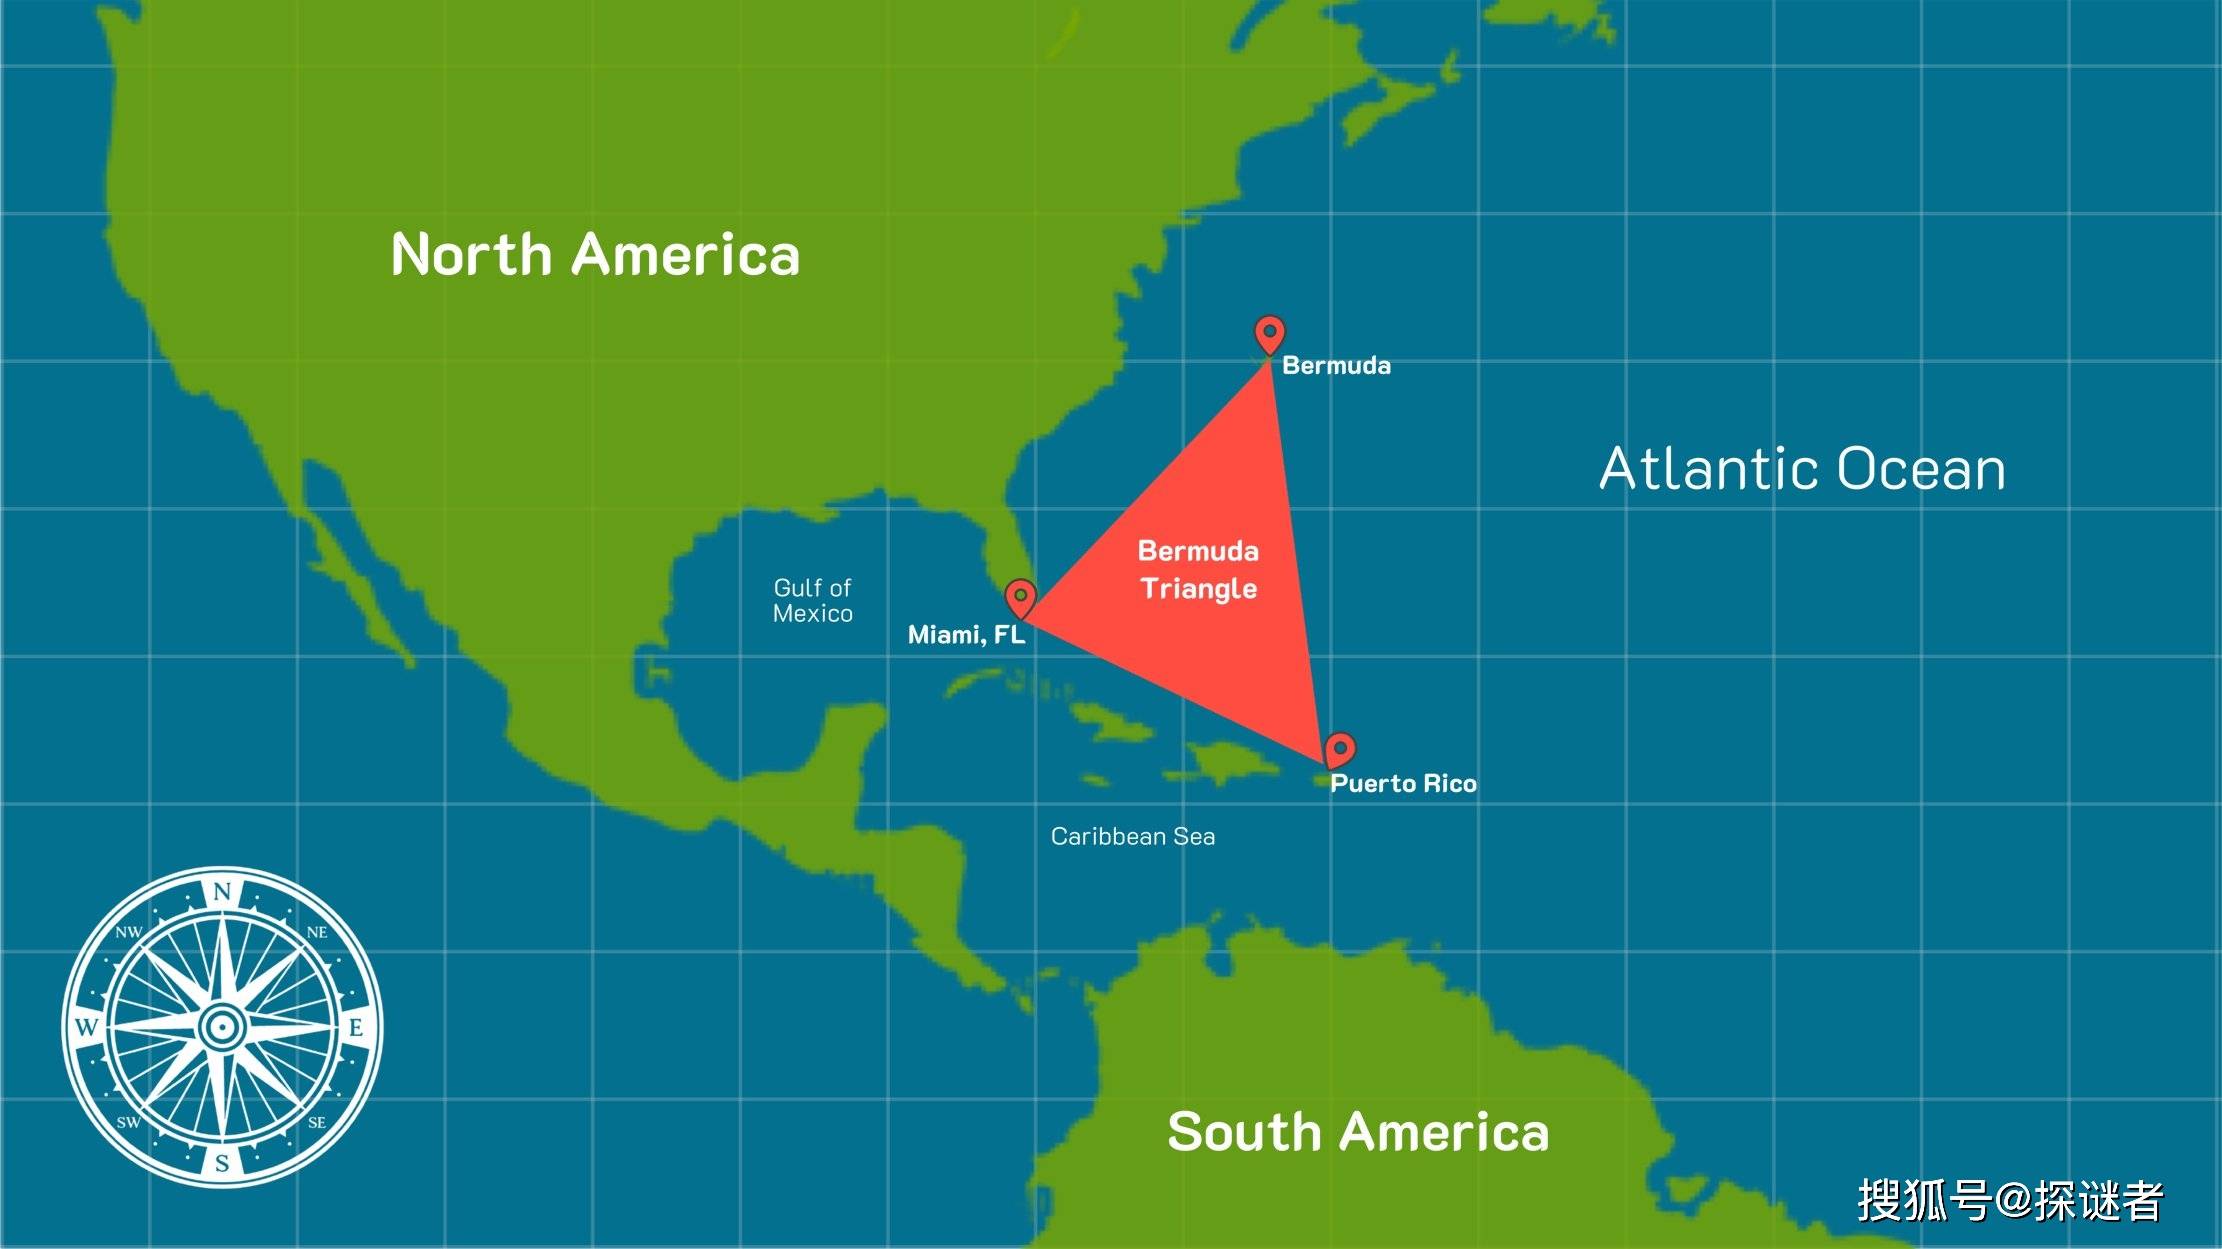 探秘百慕大三角:船只飞机的消失,究竟是因为气候还是超自然现象